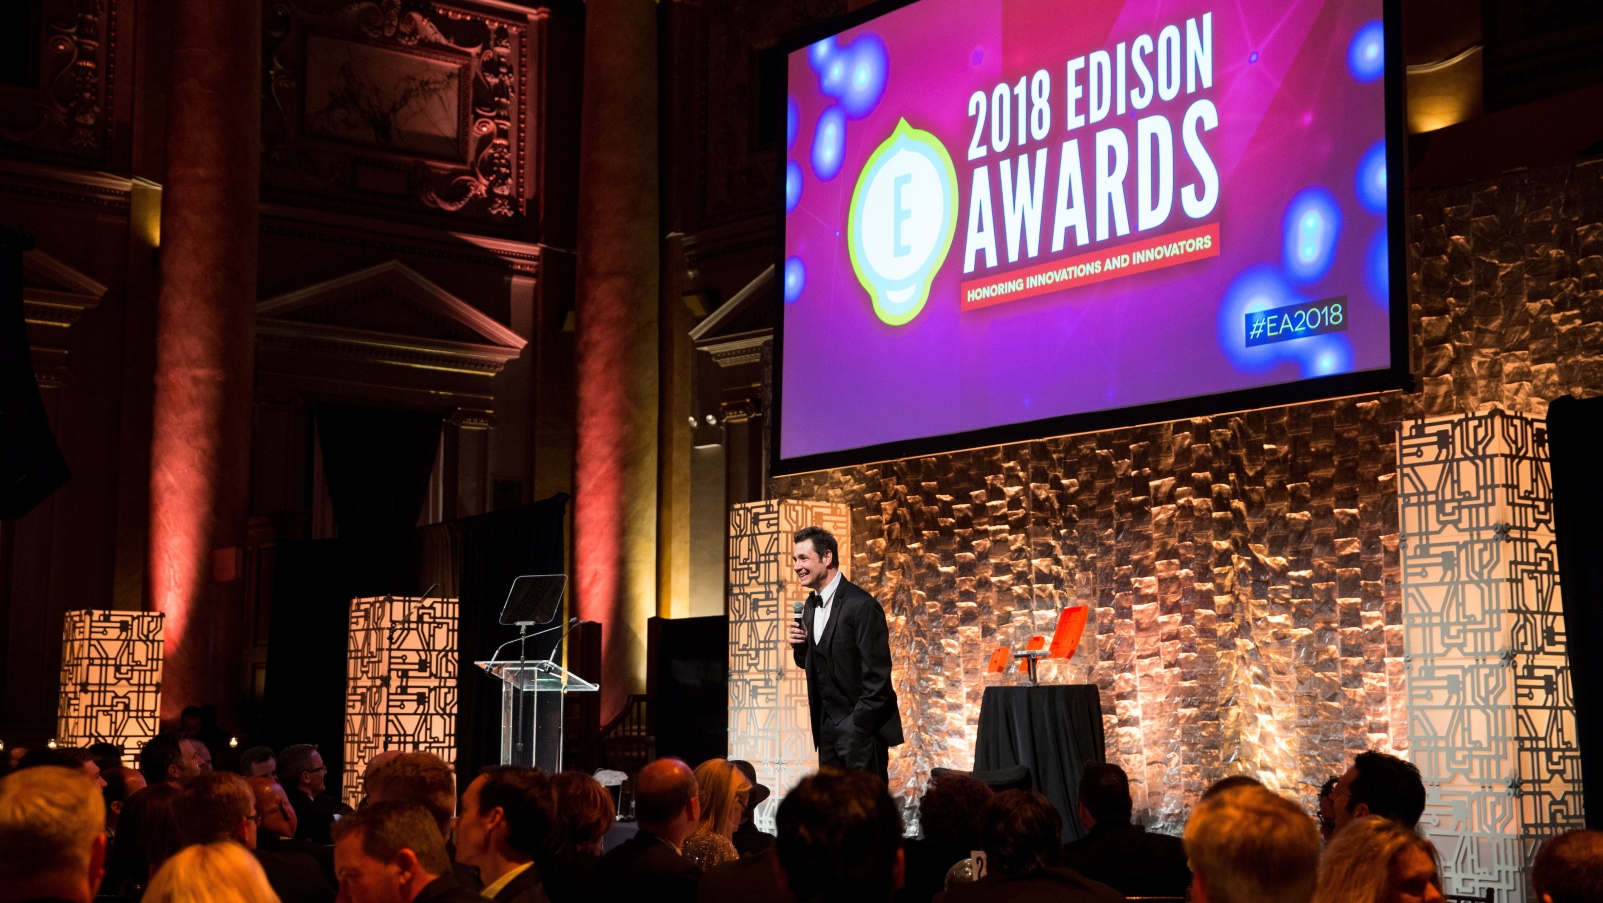 Photo courtesy of Edison Awards